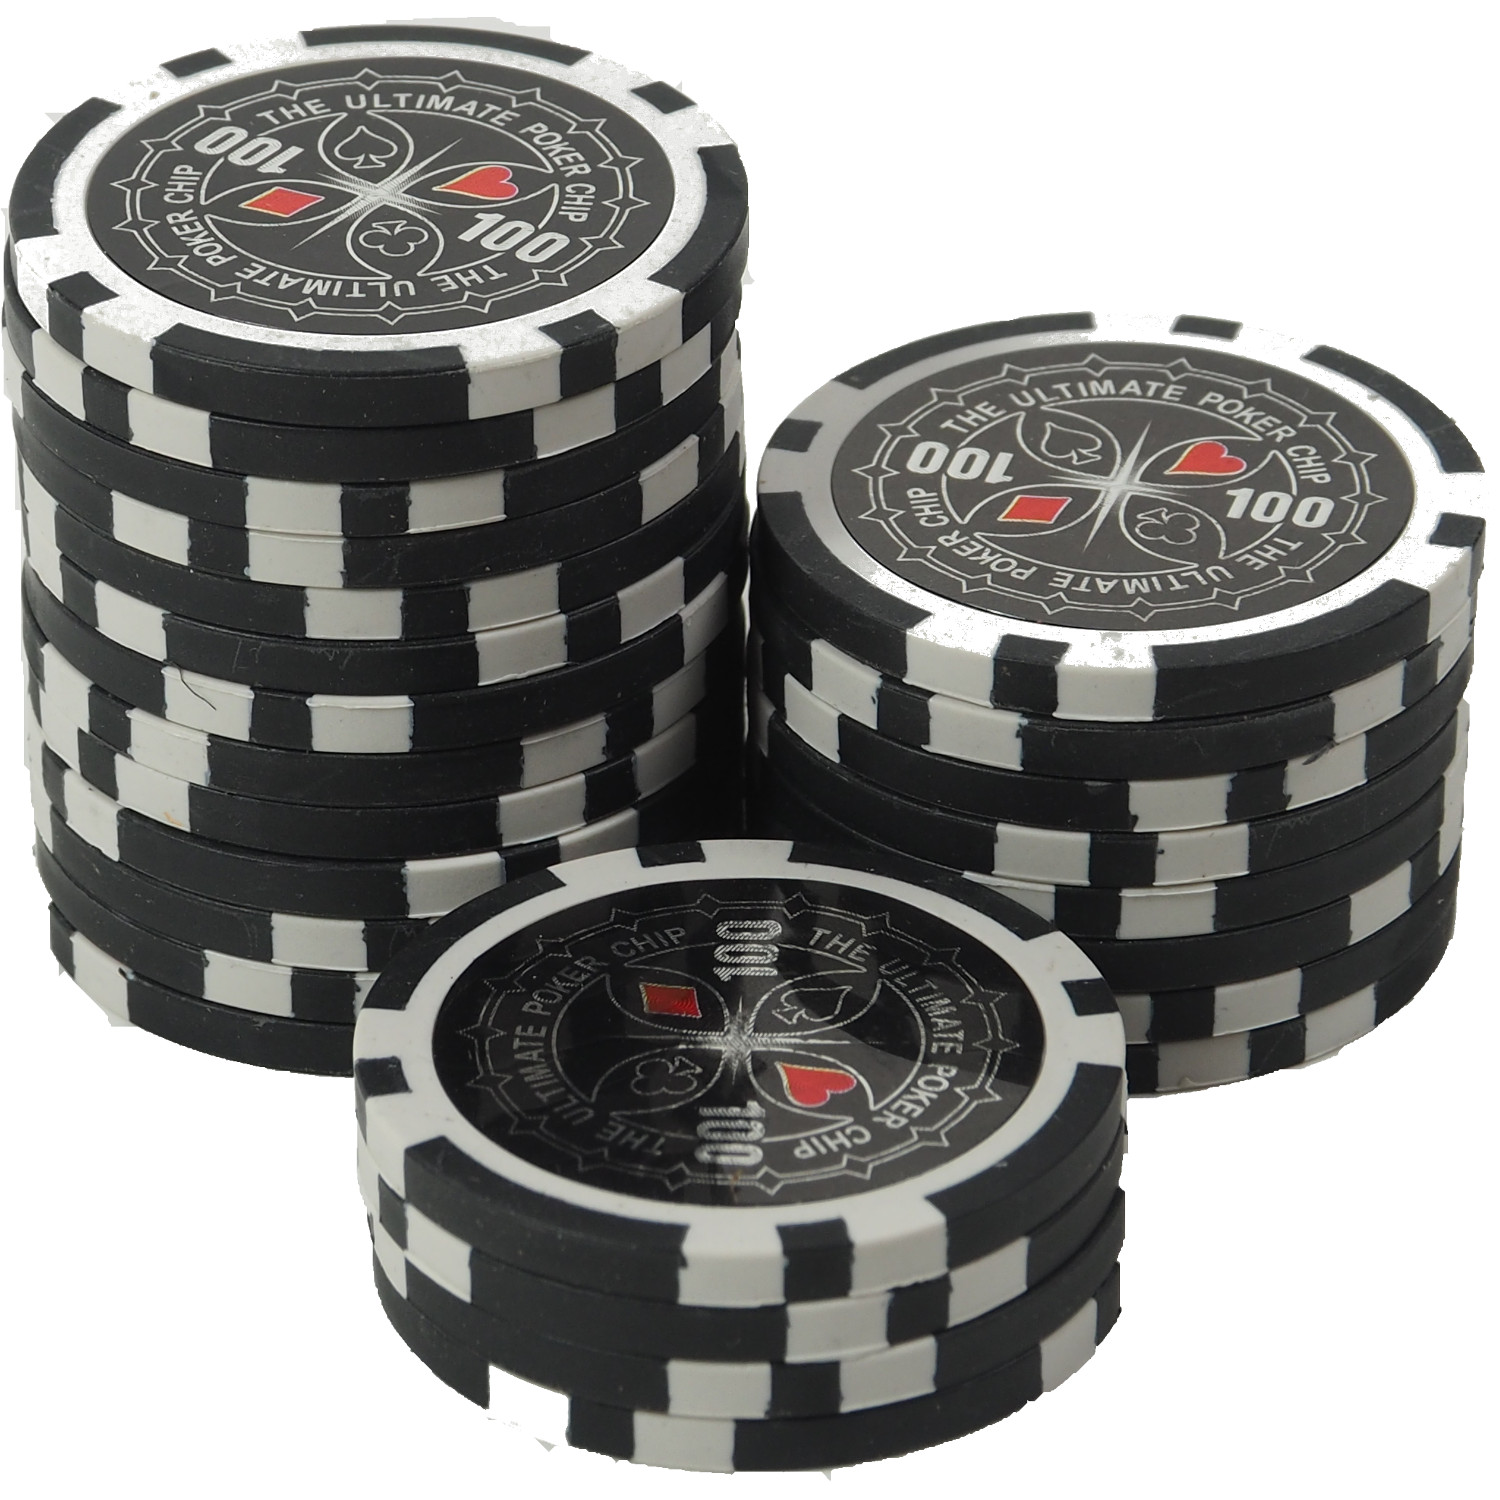 Poker Chips Farben Wertigkeit